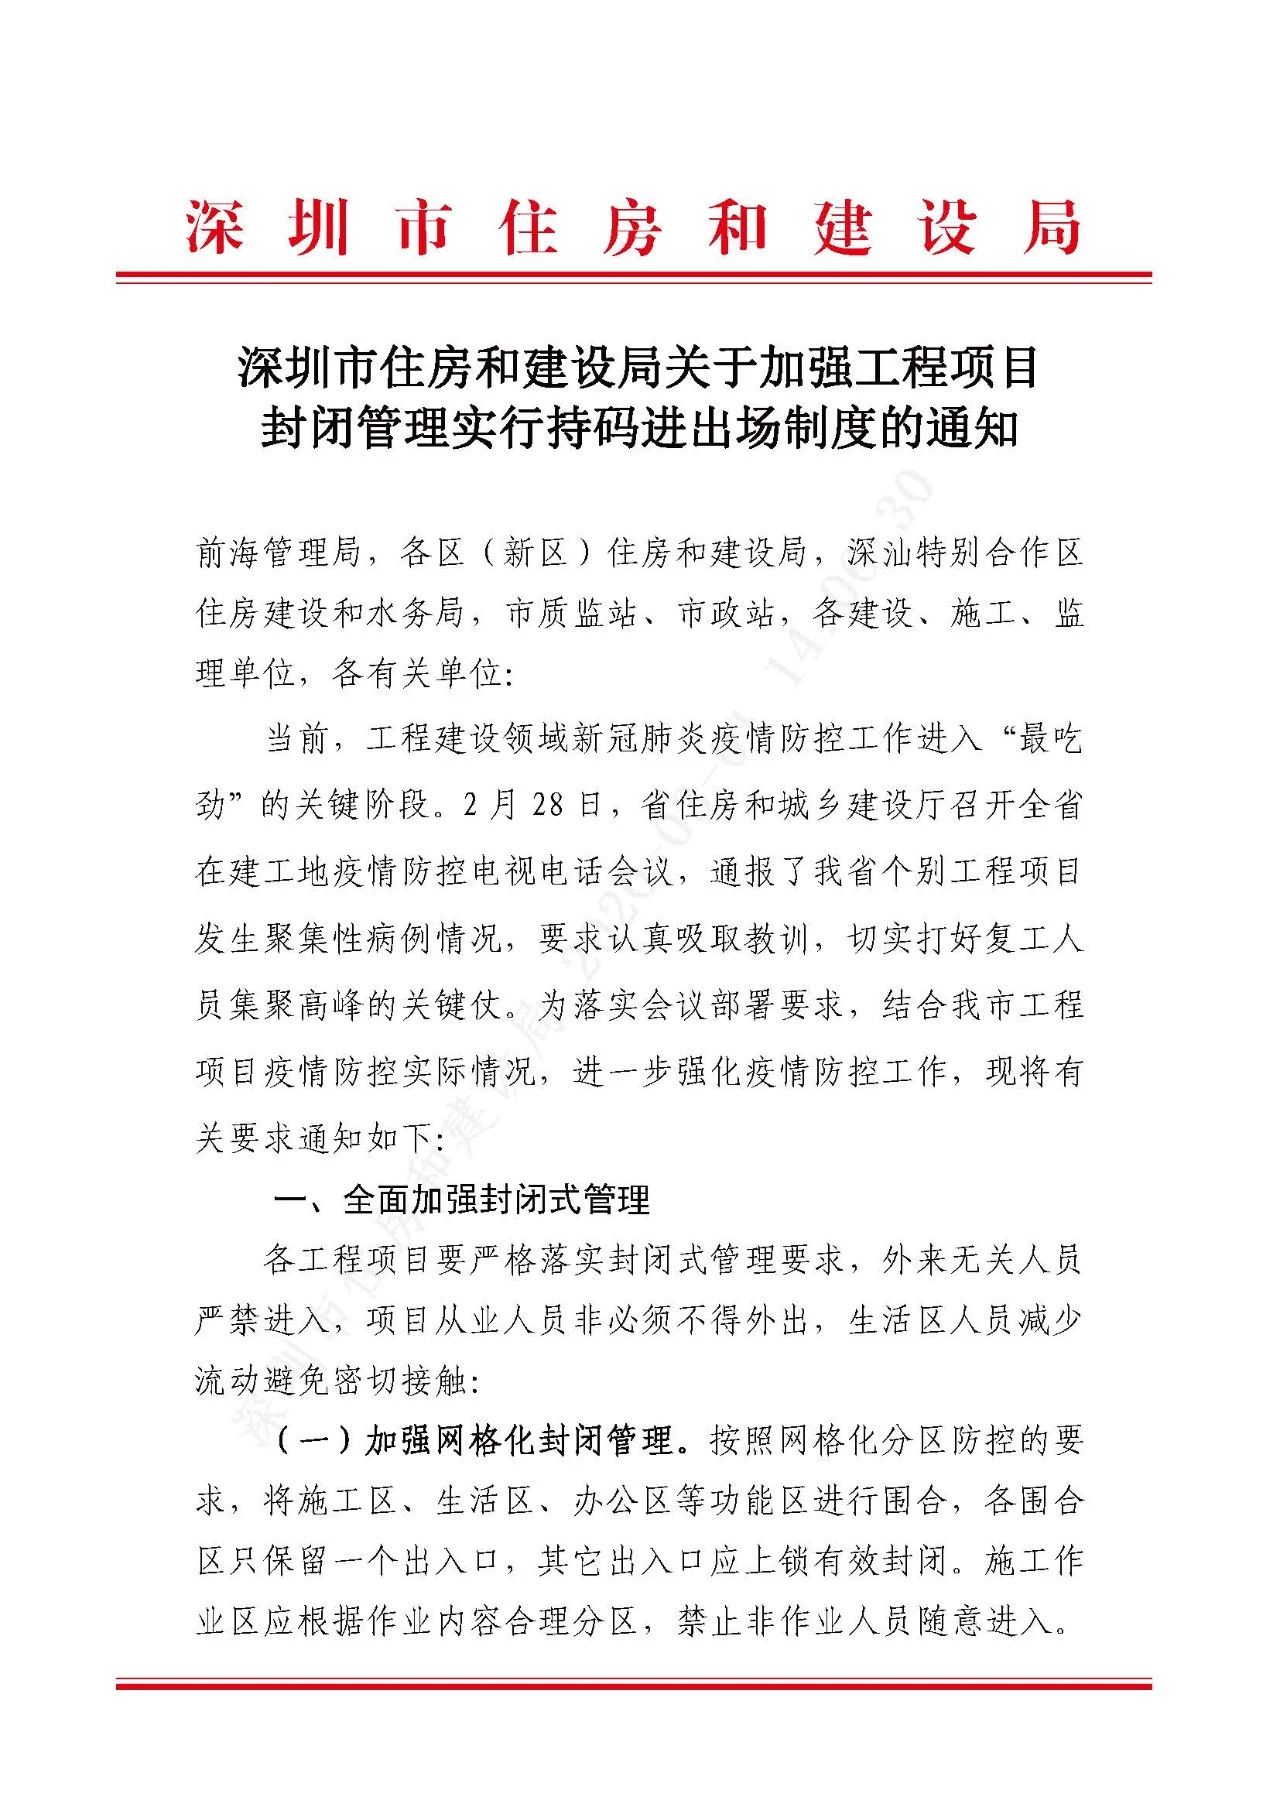 深圳市住房和建设局关于加强工程项目封闭管理实行持码进出场制度的通知